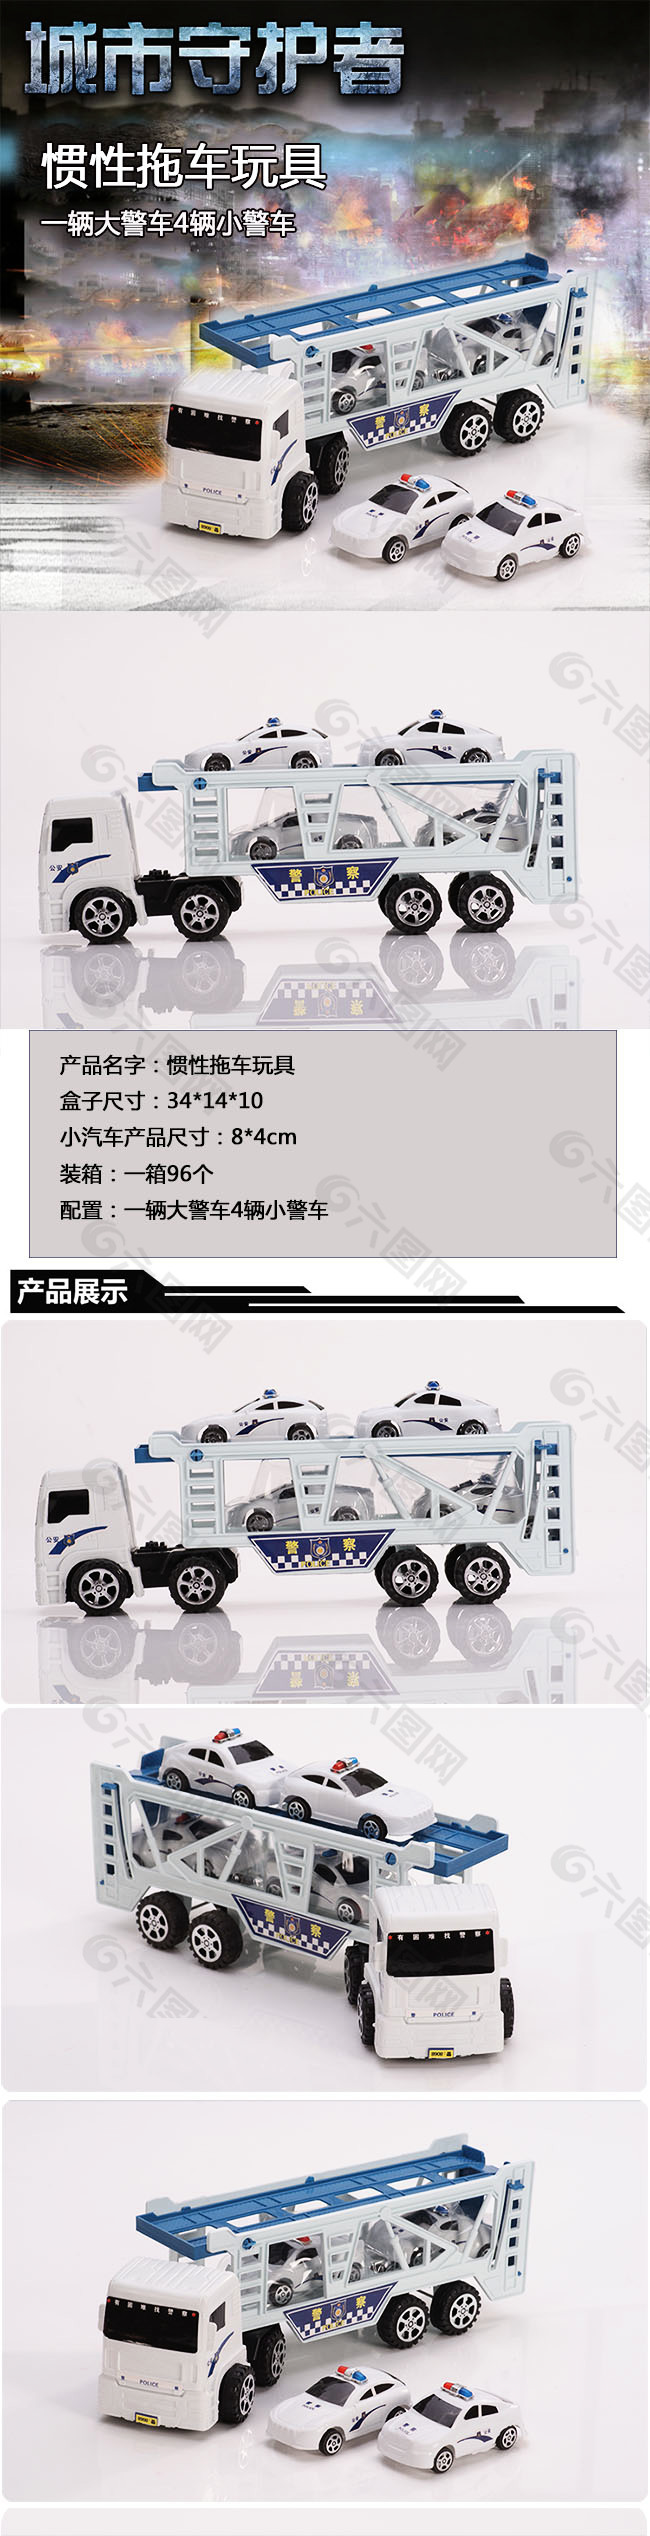 警察玩具详情页模板设计